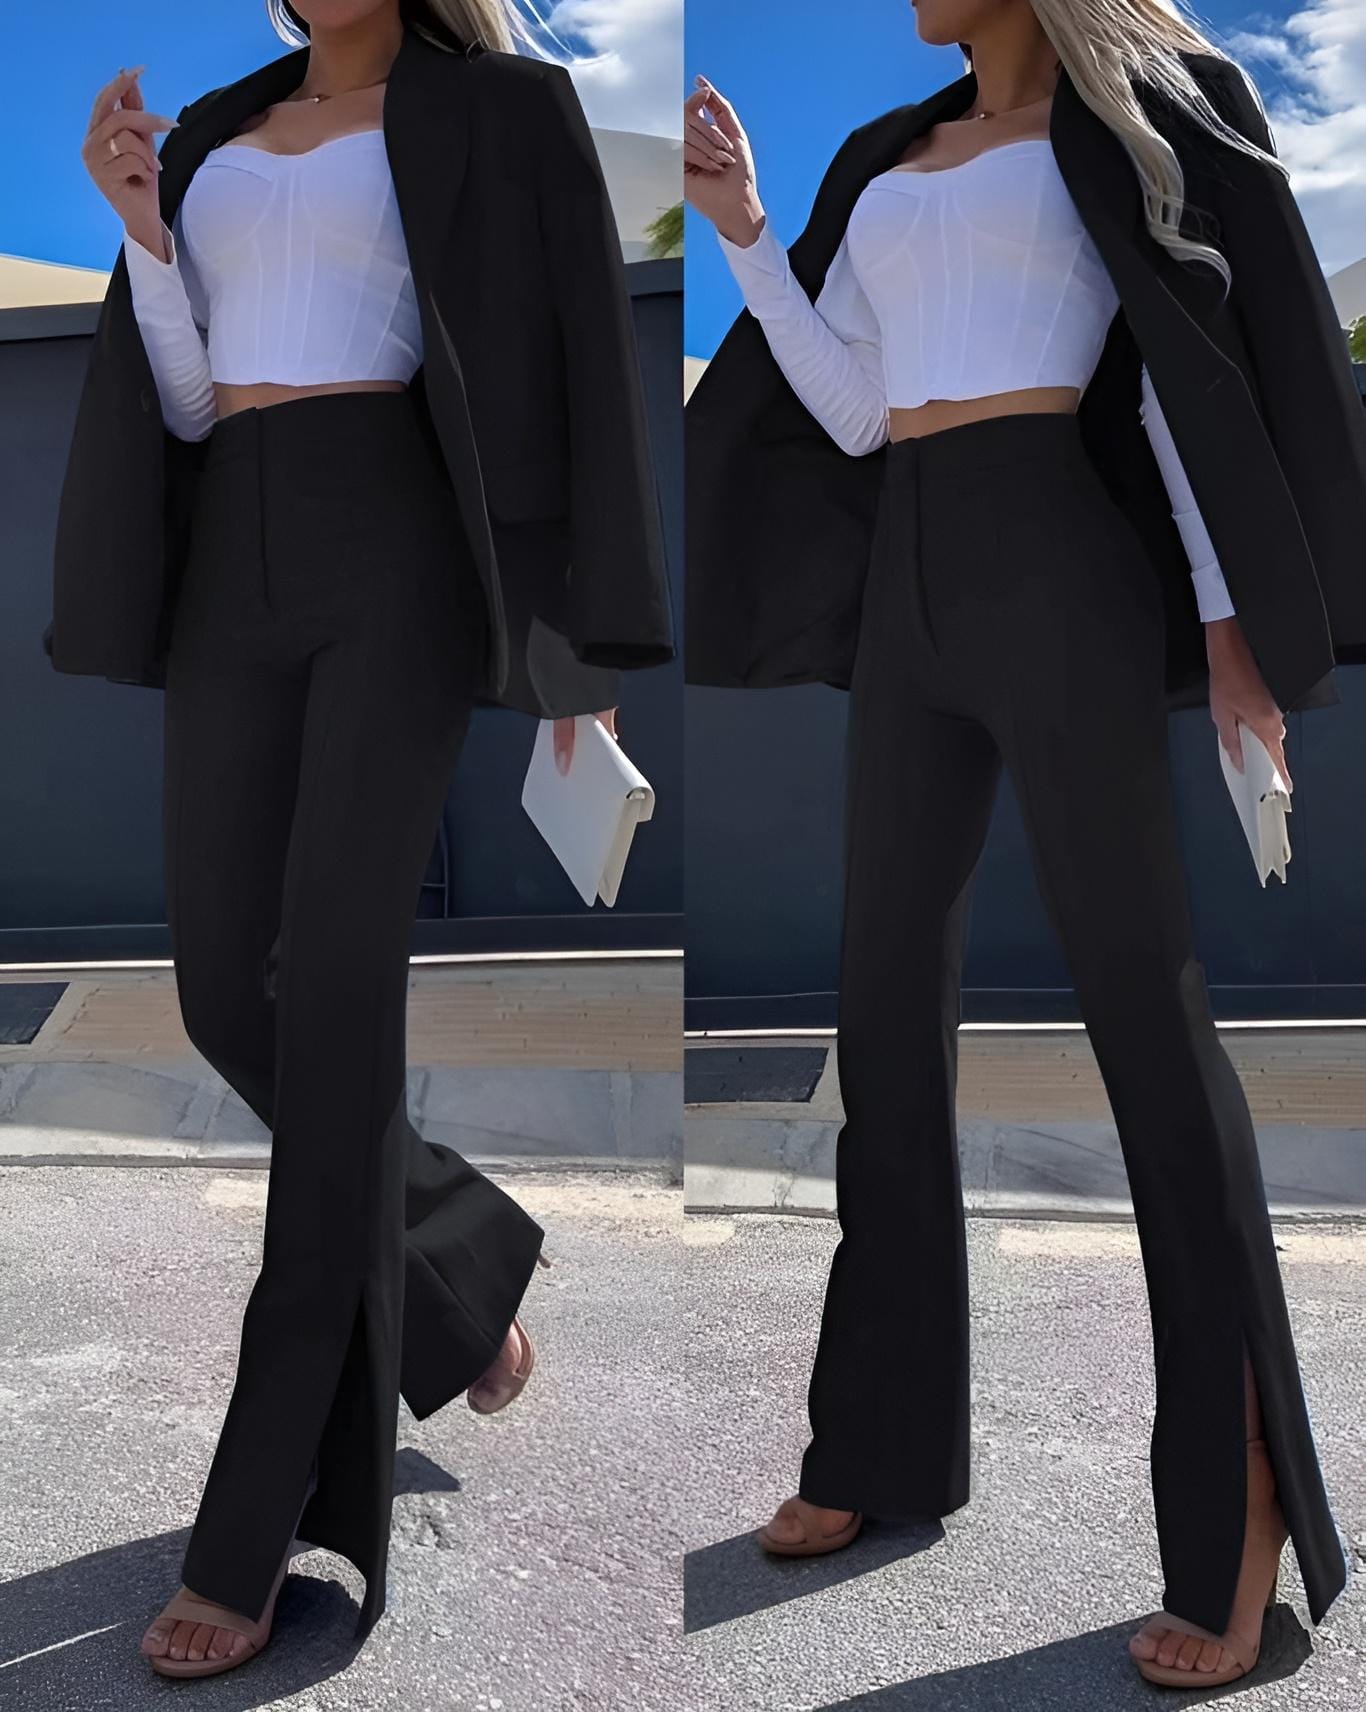 
                  
                    Tailleur Donna Completo Giacca Pantalone Vita Alta Zampa Spacco - LE STYLE DE PARIS
                  
                